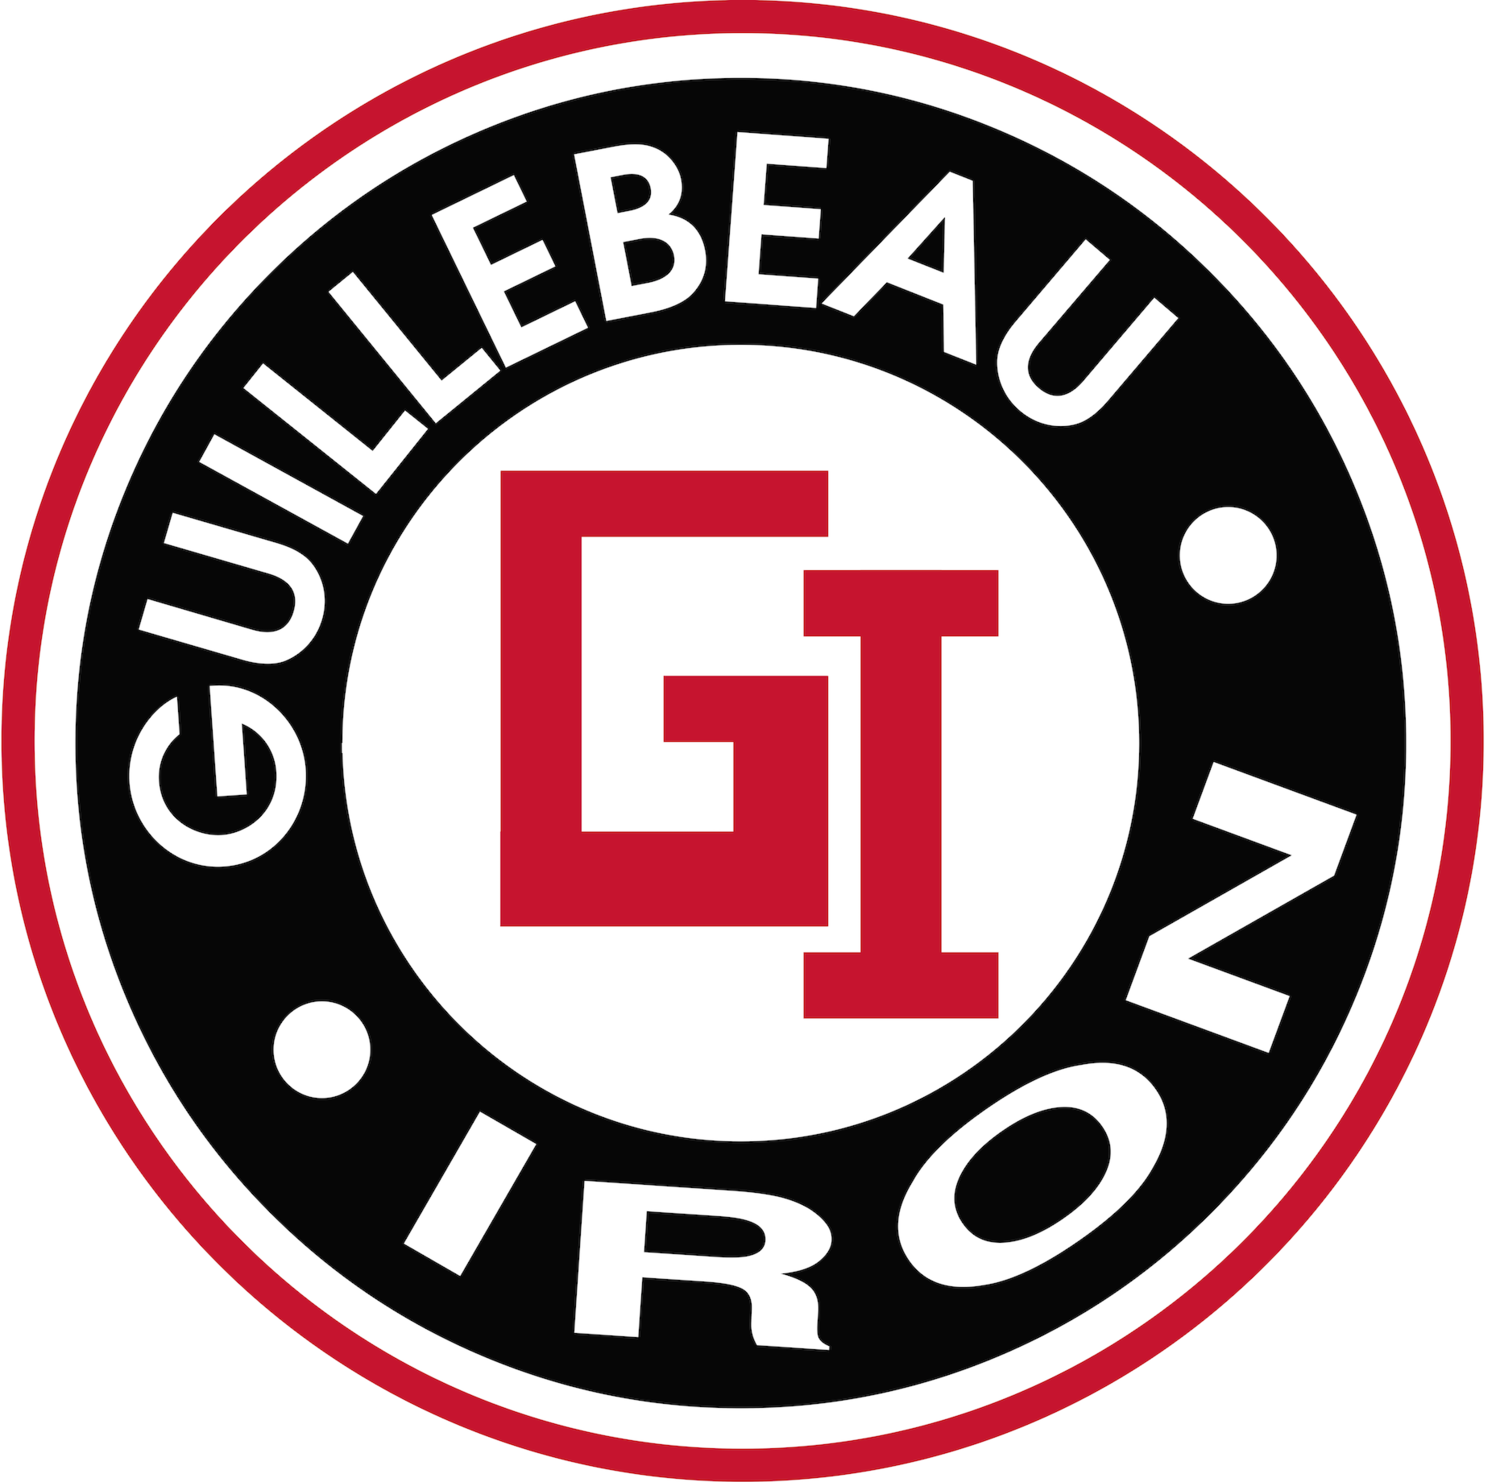 Guillebeau Iron